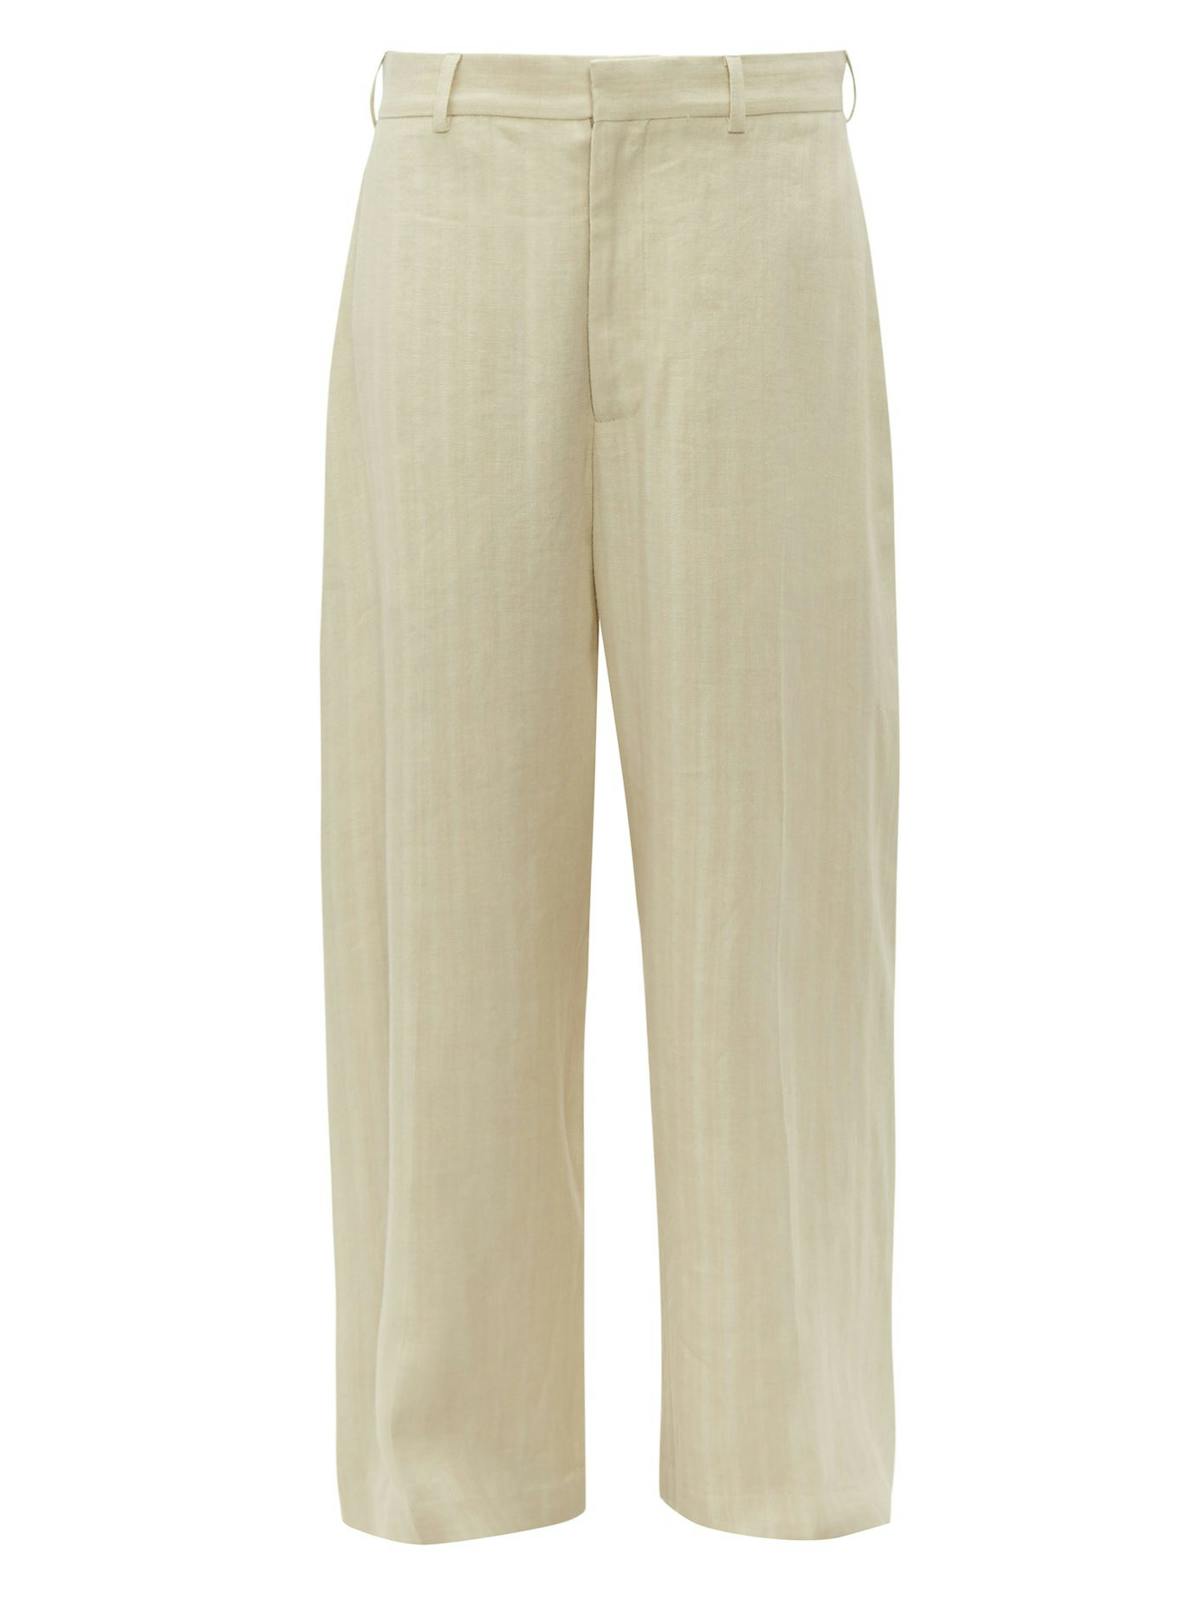 Heatwave UK: 7 lightweight trousers to wear